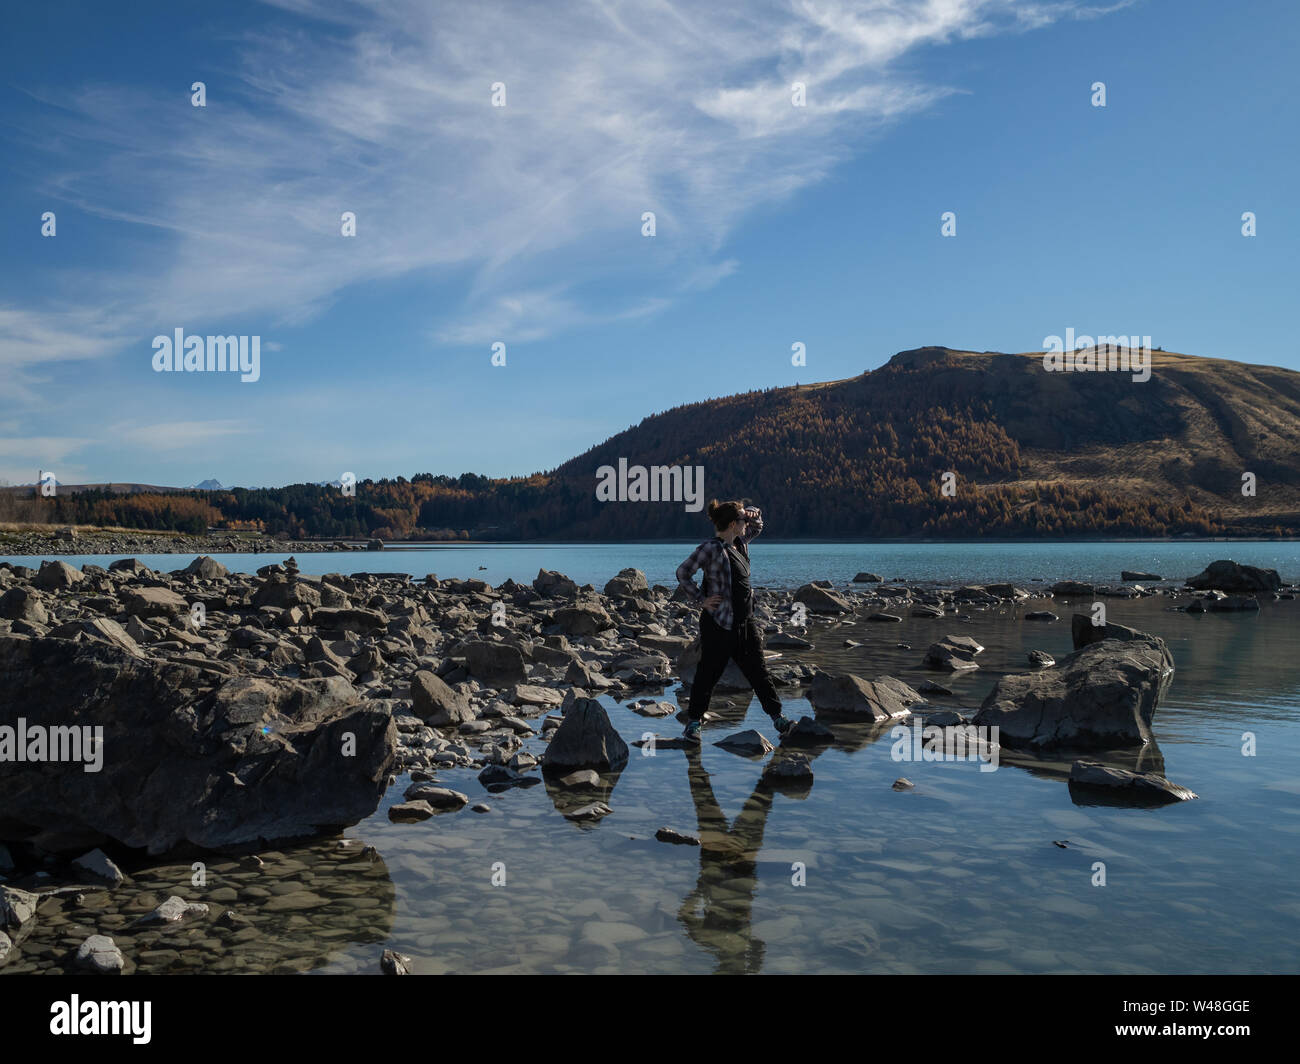 Eine Person am Ufer des Lake Tekapo, Neuseeland, mit türkisblauem Wasser Stockfoto